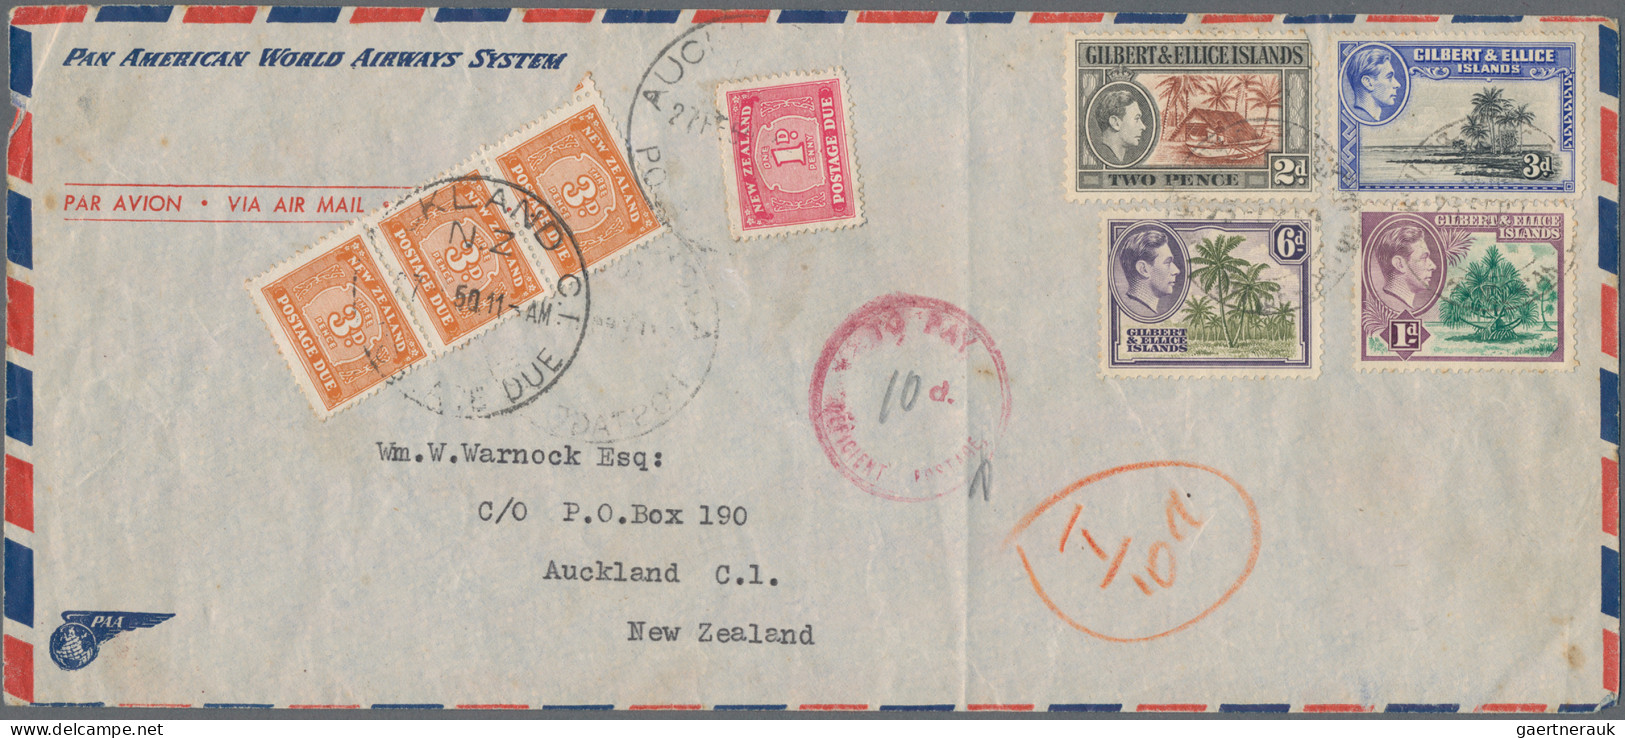 New Zealand - Postage Dues: 1950 Air Mail Envelope From Gilbert & Ellis Islands - Impuestos